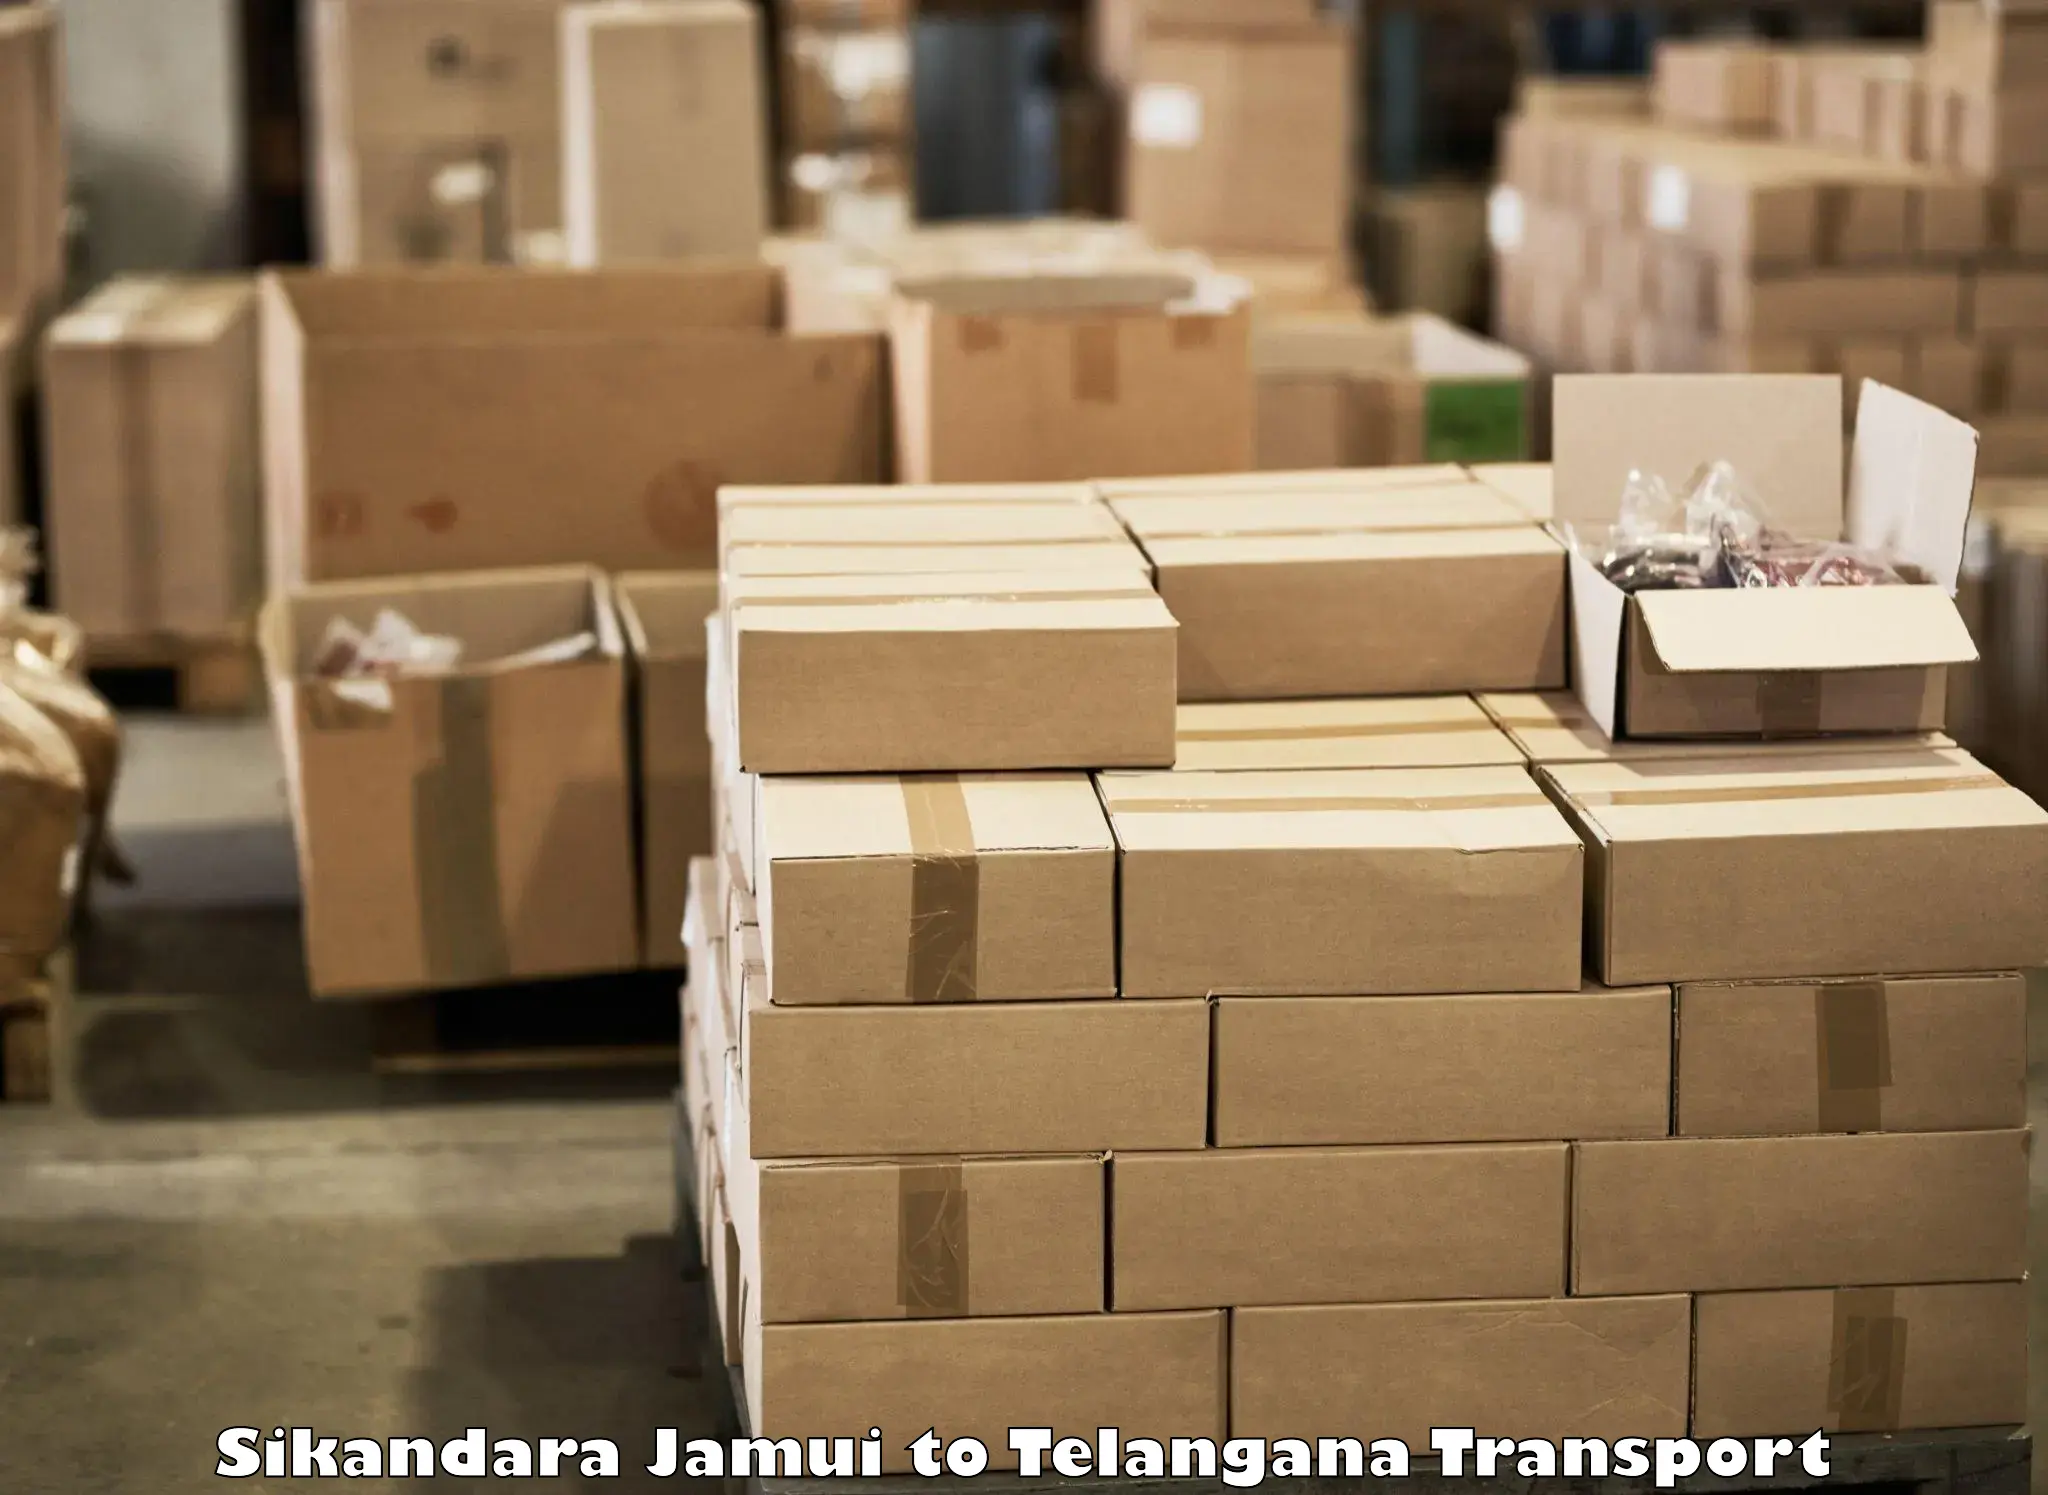 Truck transport companies in India Sikandara Jamui to Bhadrachalam